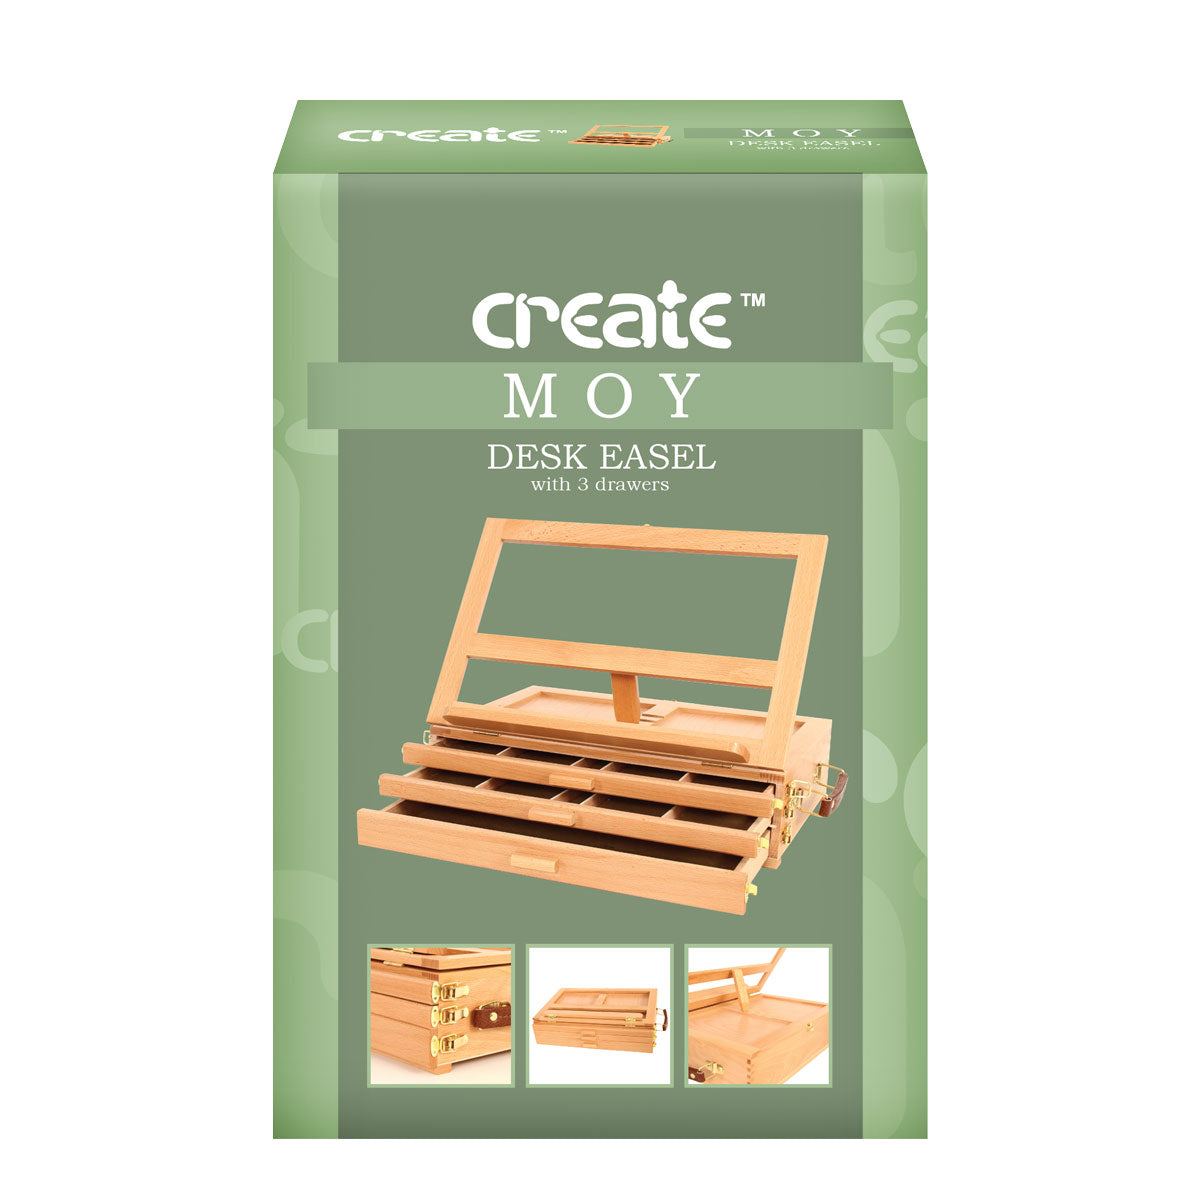 Erstellen - Moy 3 Schubladenschreiber -Box Trailsel